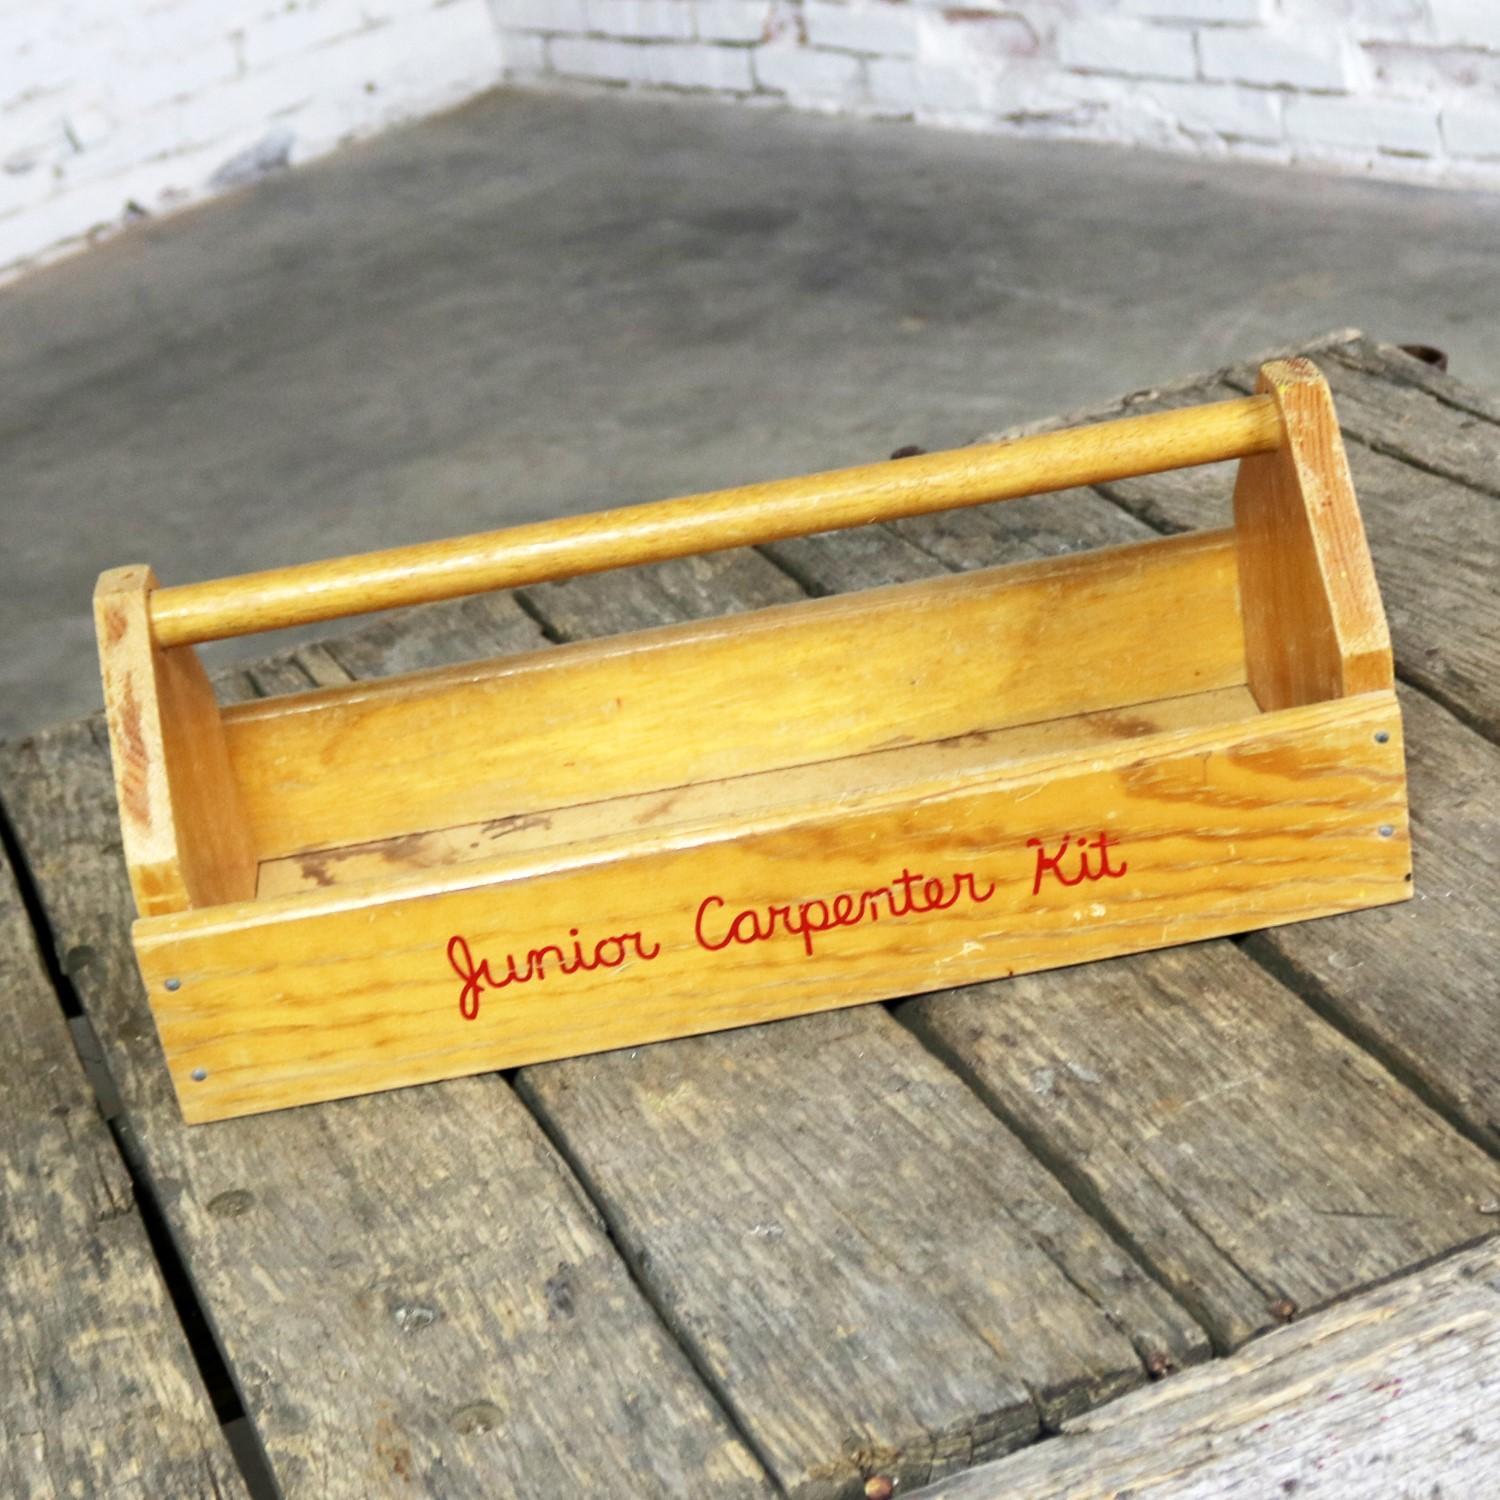 Objekt Object d Art Tafelaufsatz Junior Carpenter Kit Tool Box mit Kugeln und Hufeisen im Angebot 3